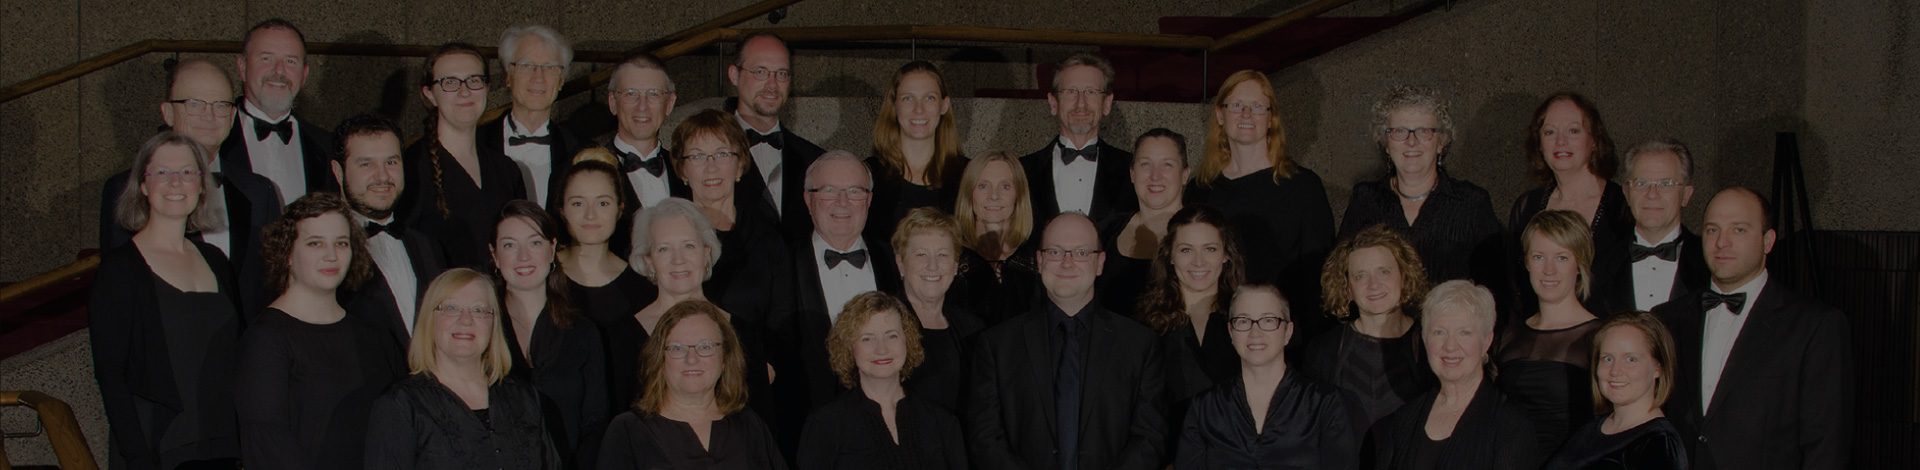 Cantata Singers of Ottawa choir